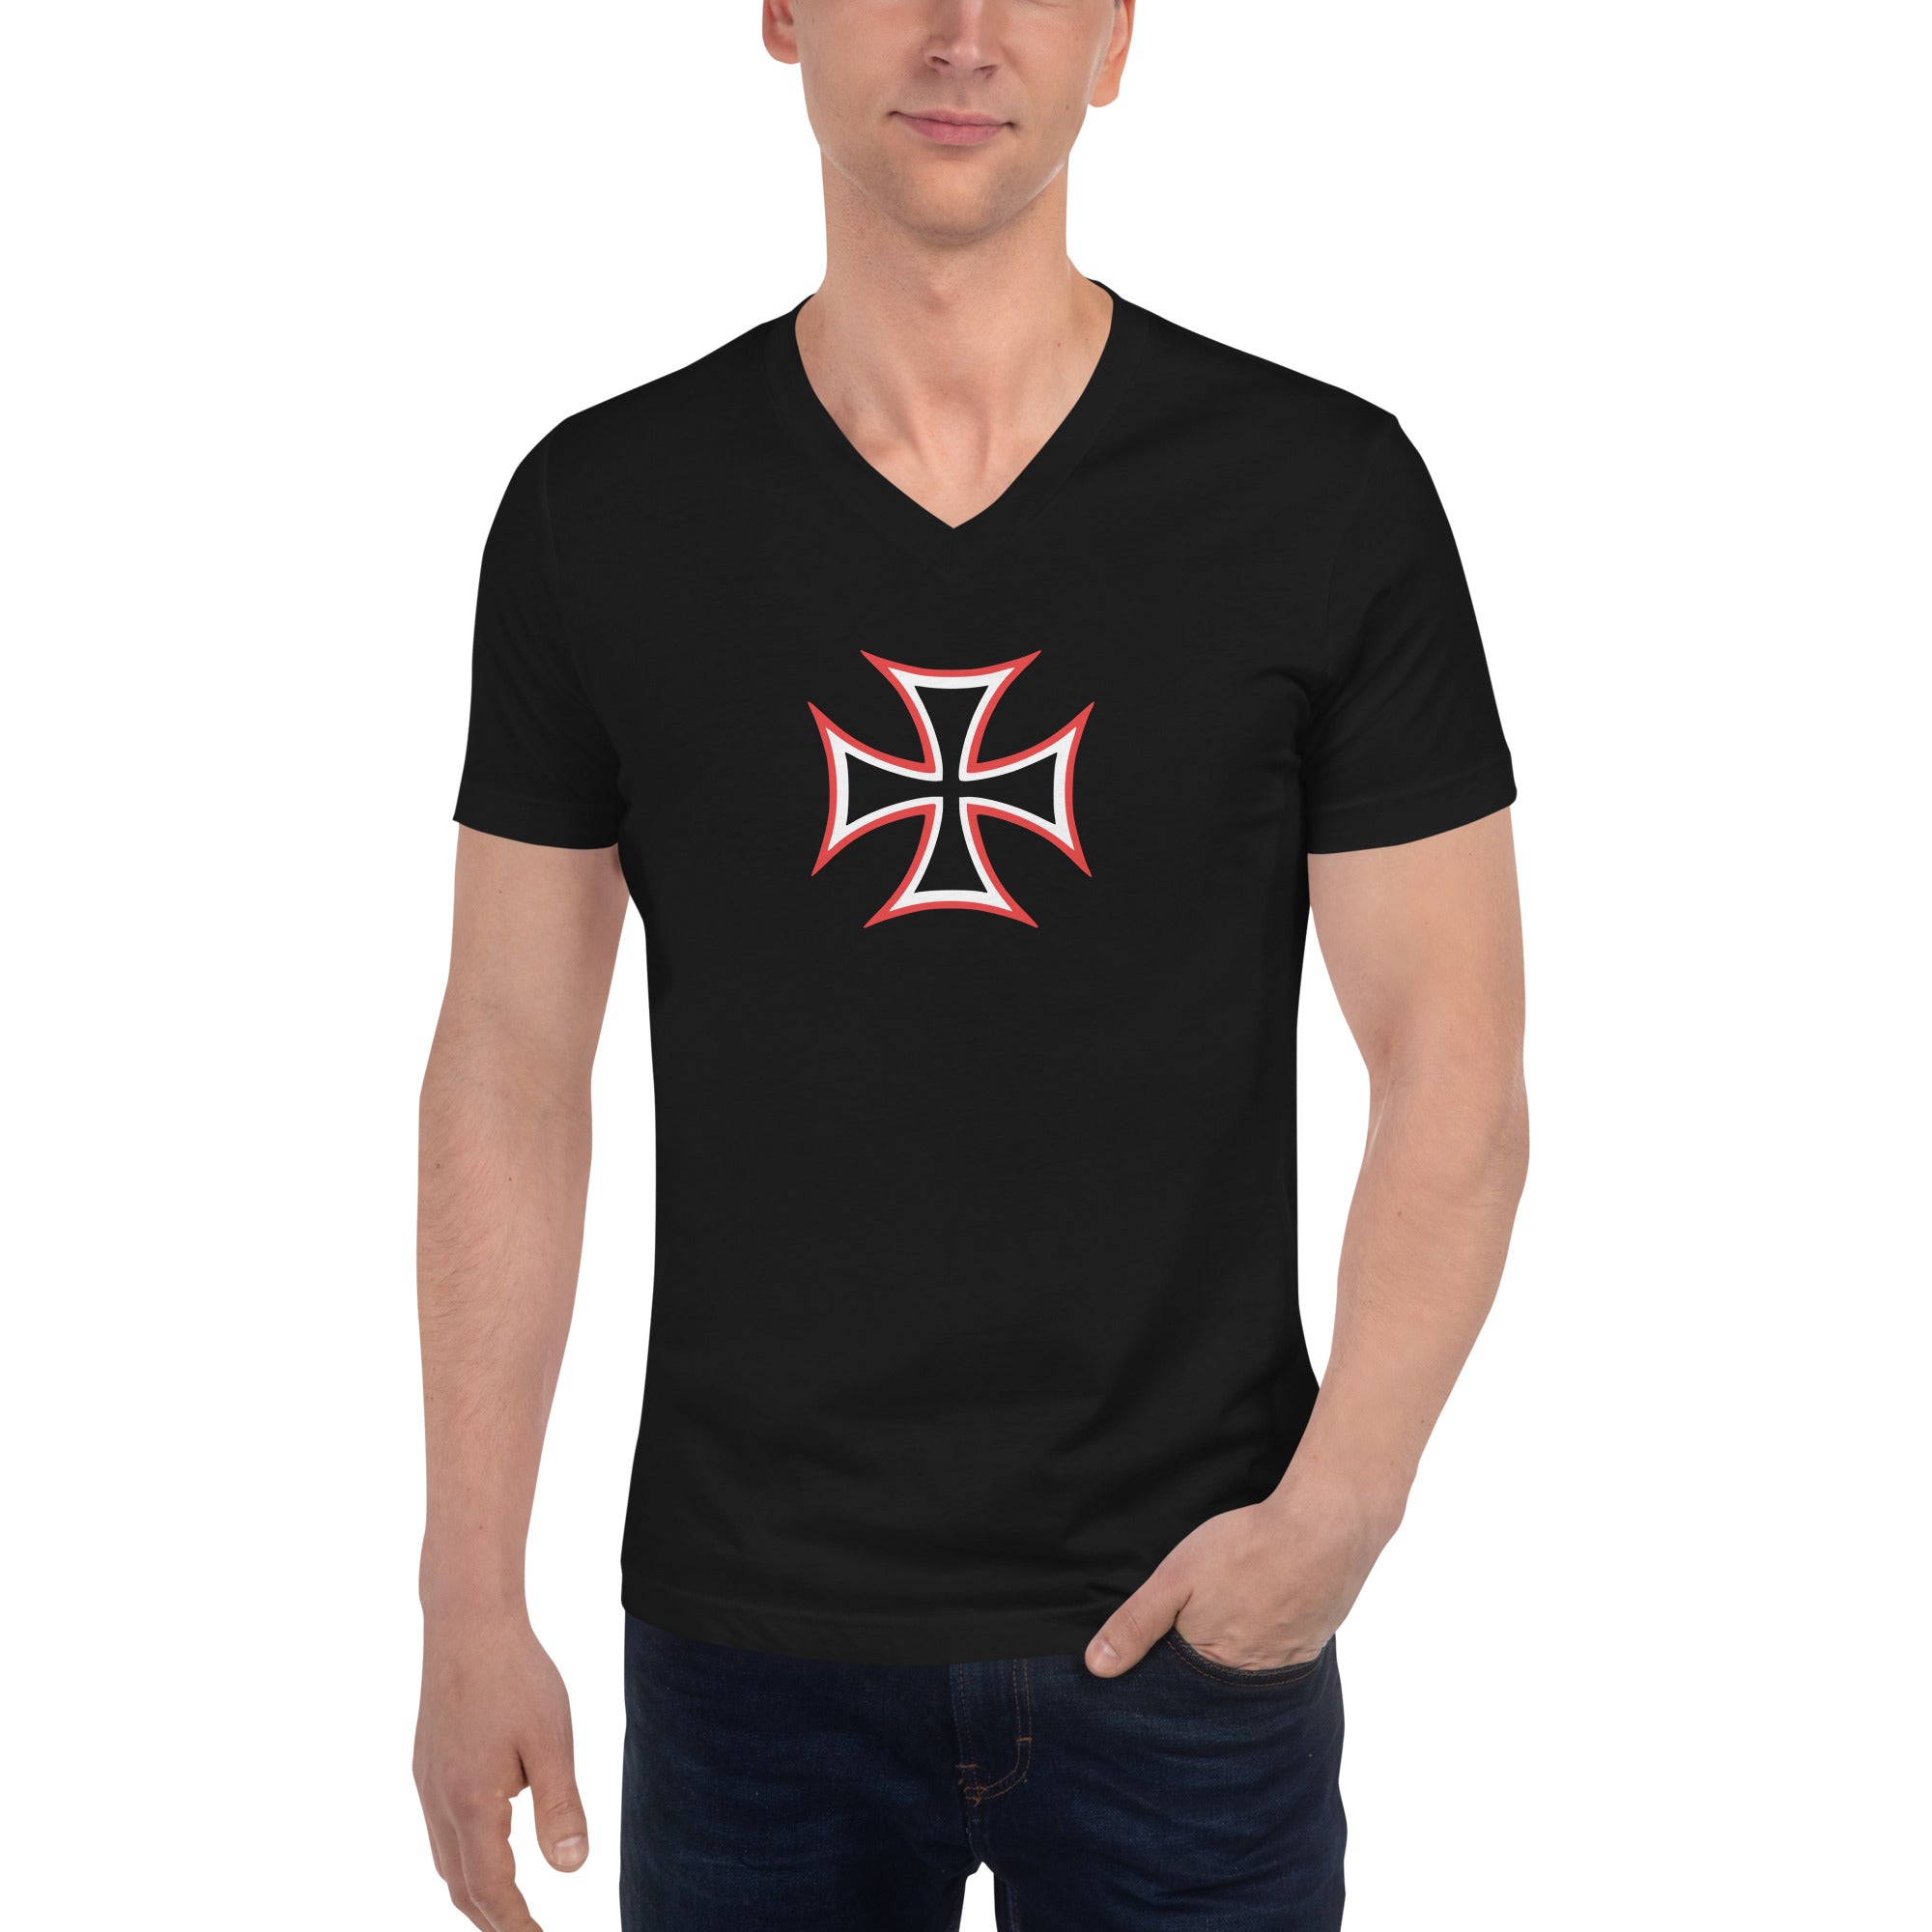 Red and White Occult Biker Cross Symbol Short Sleeve V-Neck T-Shirt